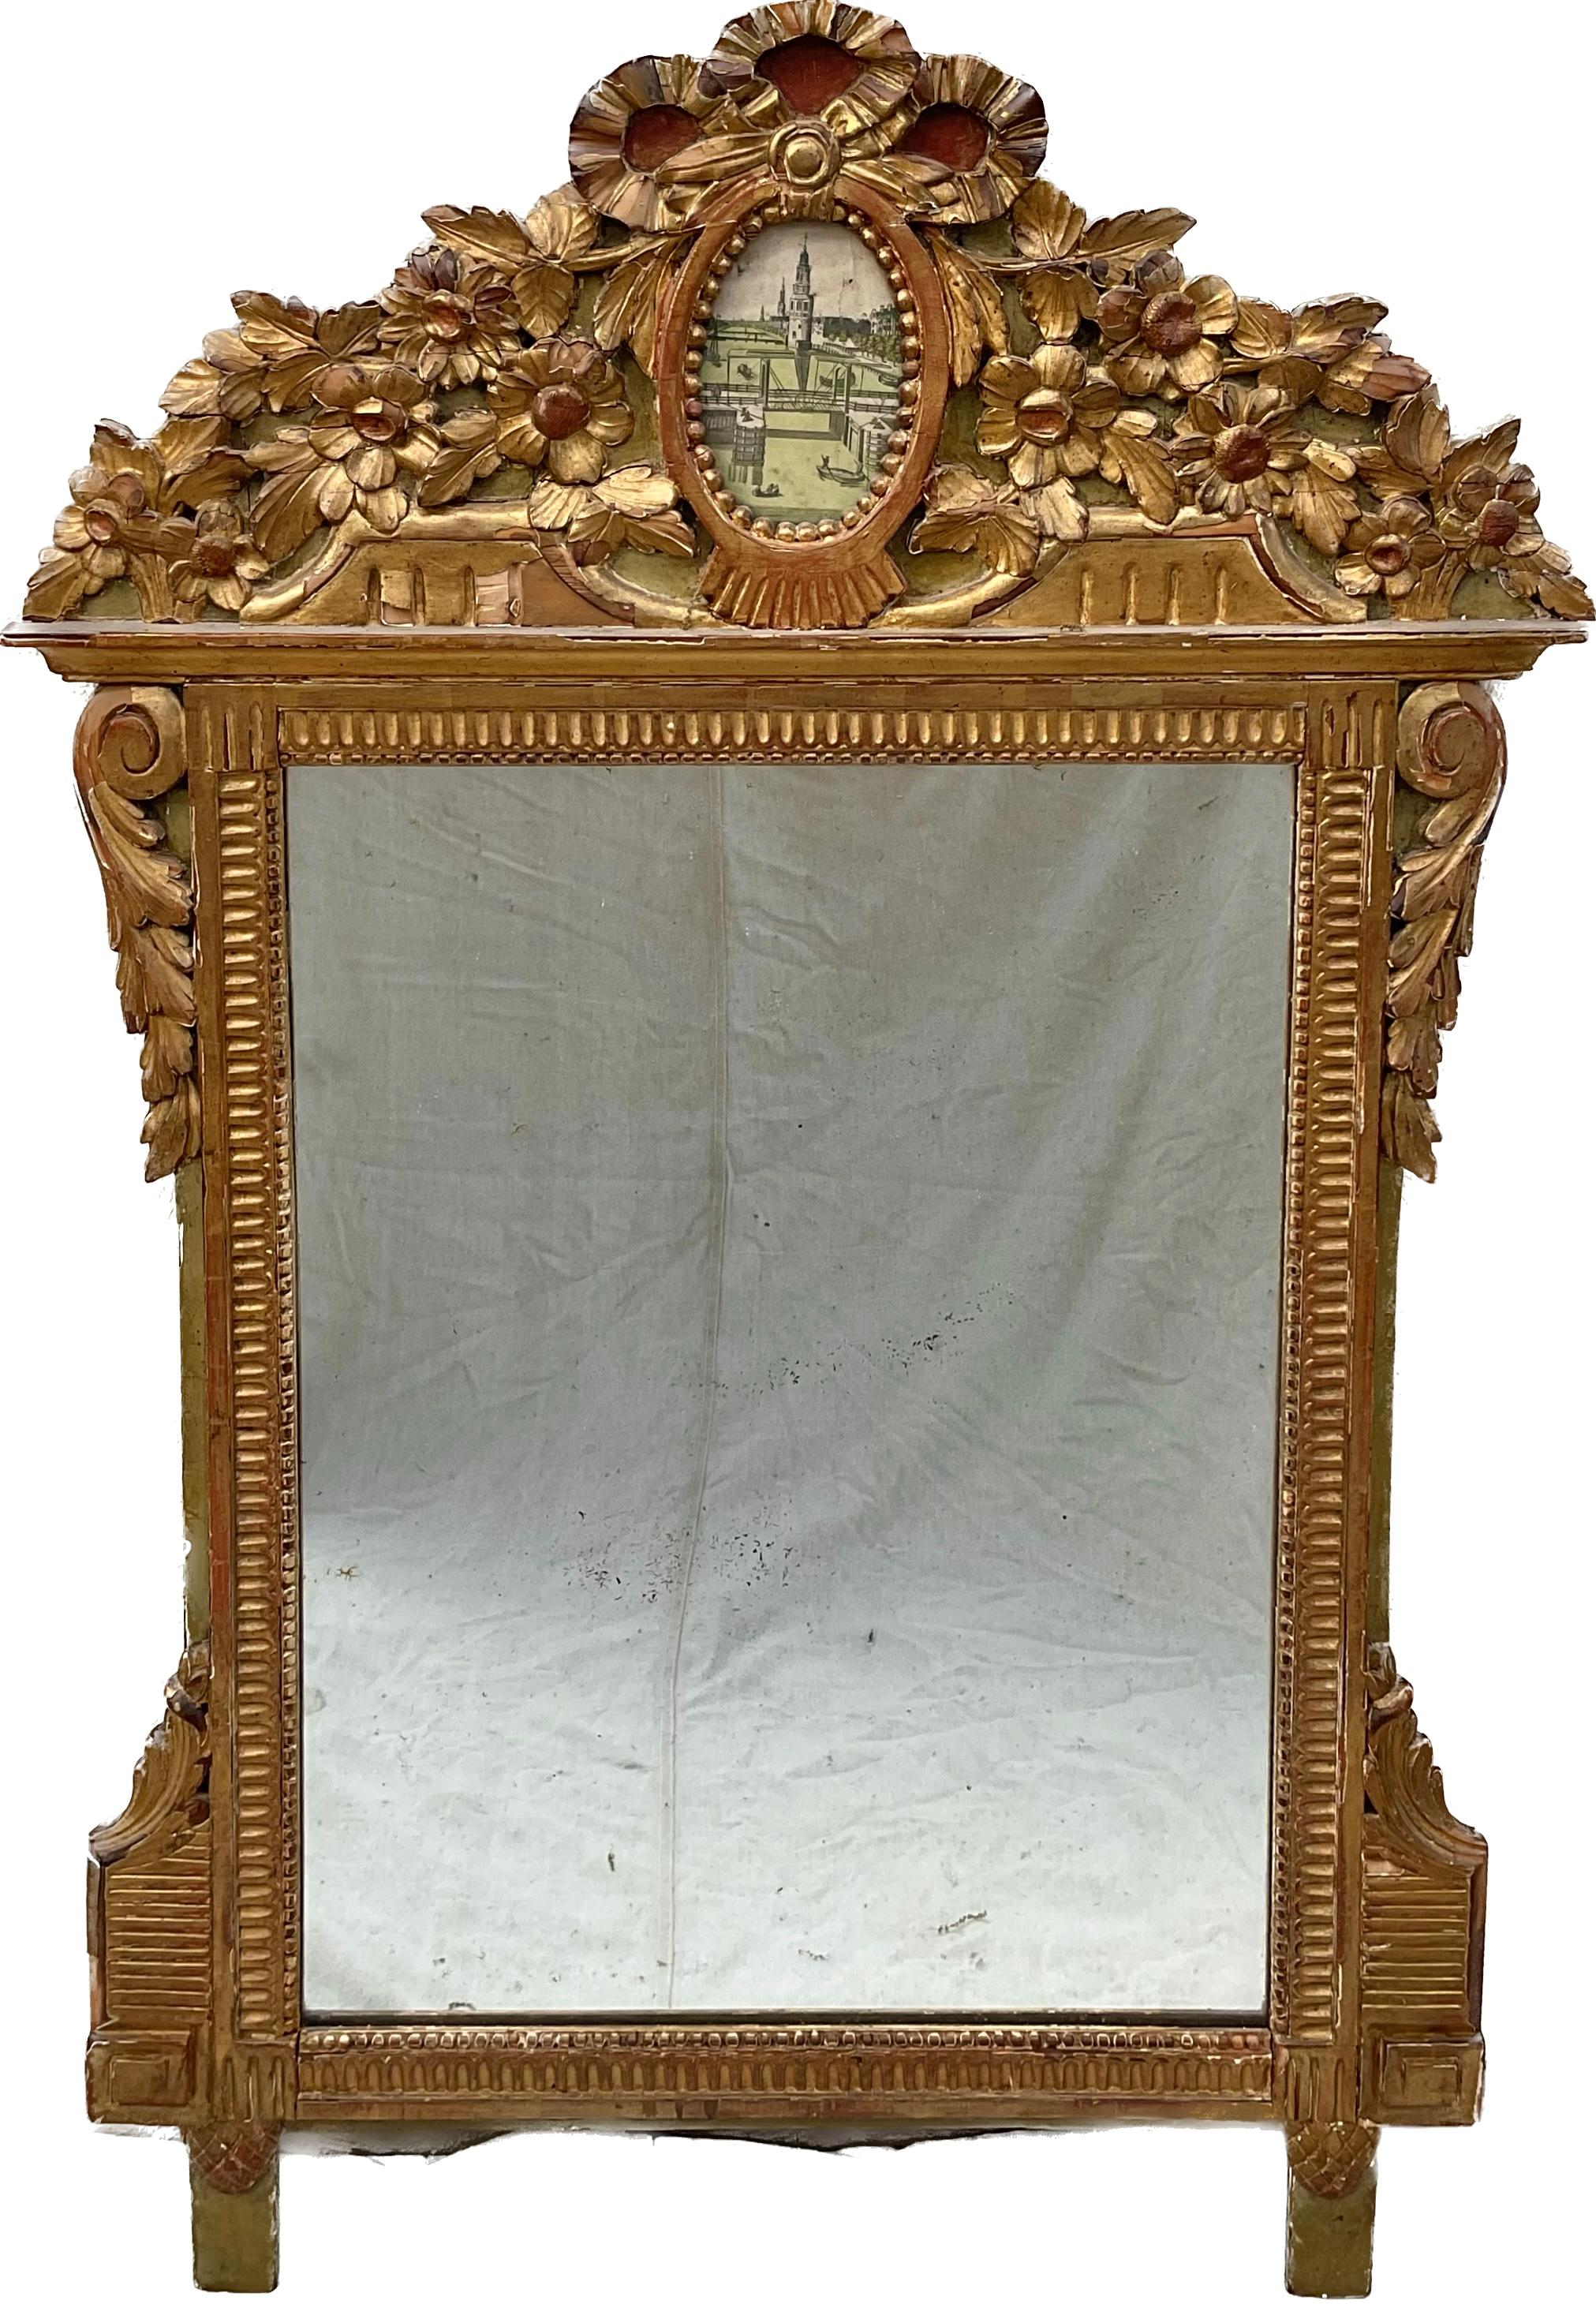 Cet élégant miroir Louis XVI du XVIIIe siècle serait un ajout charmant à tout décor intérieur. Fabriqué dans le sud de la France, vers 1780, le miroir est fortement sculpté et illustre les éléments de conception du style rococo et baroque. Le